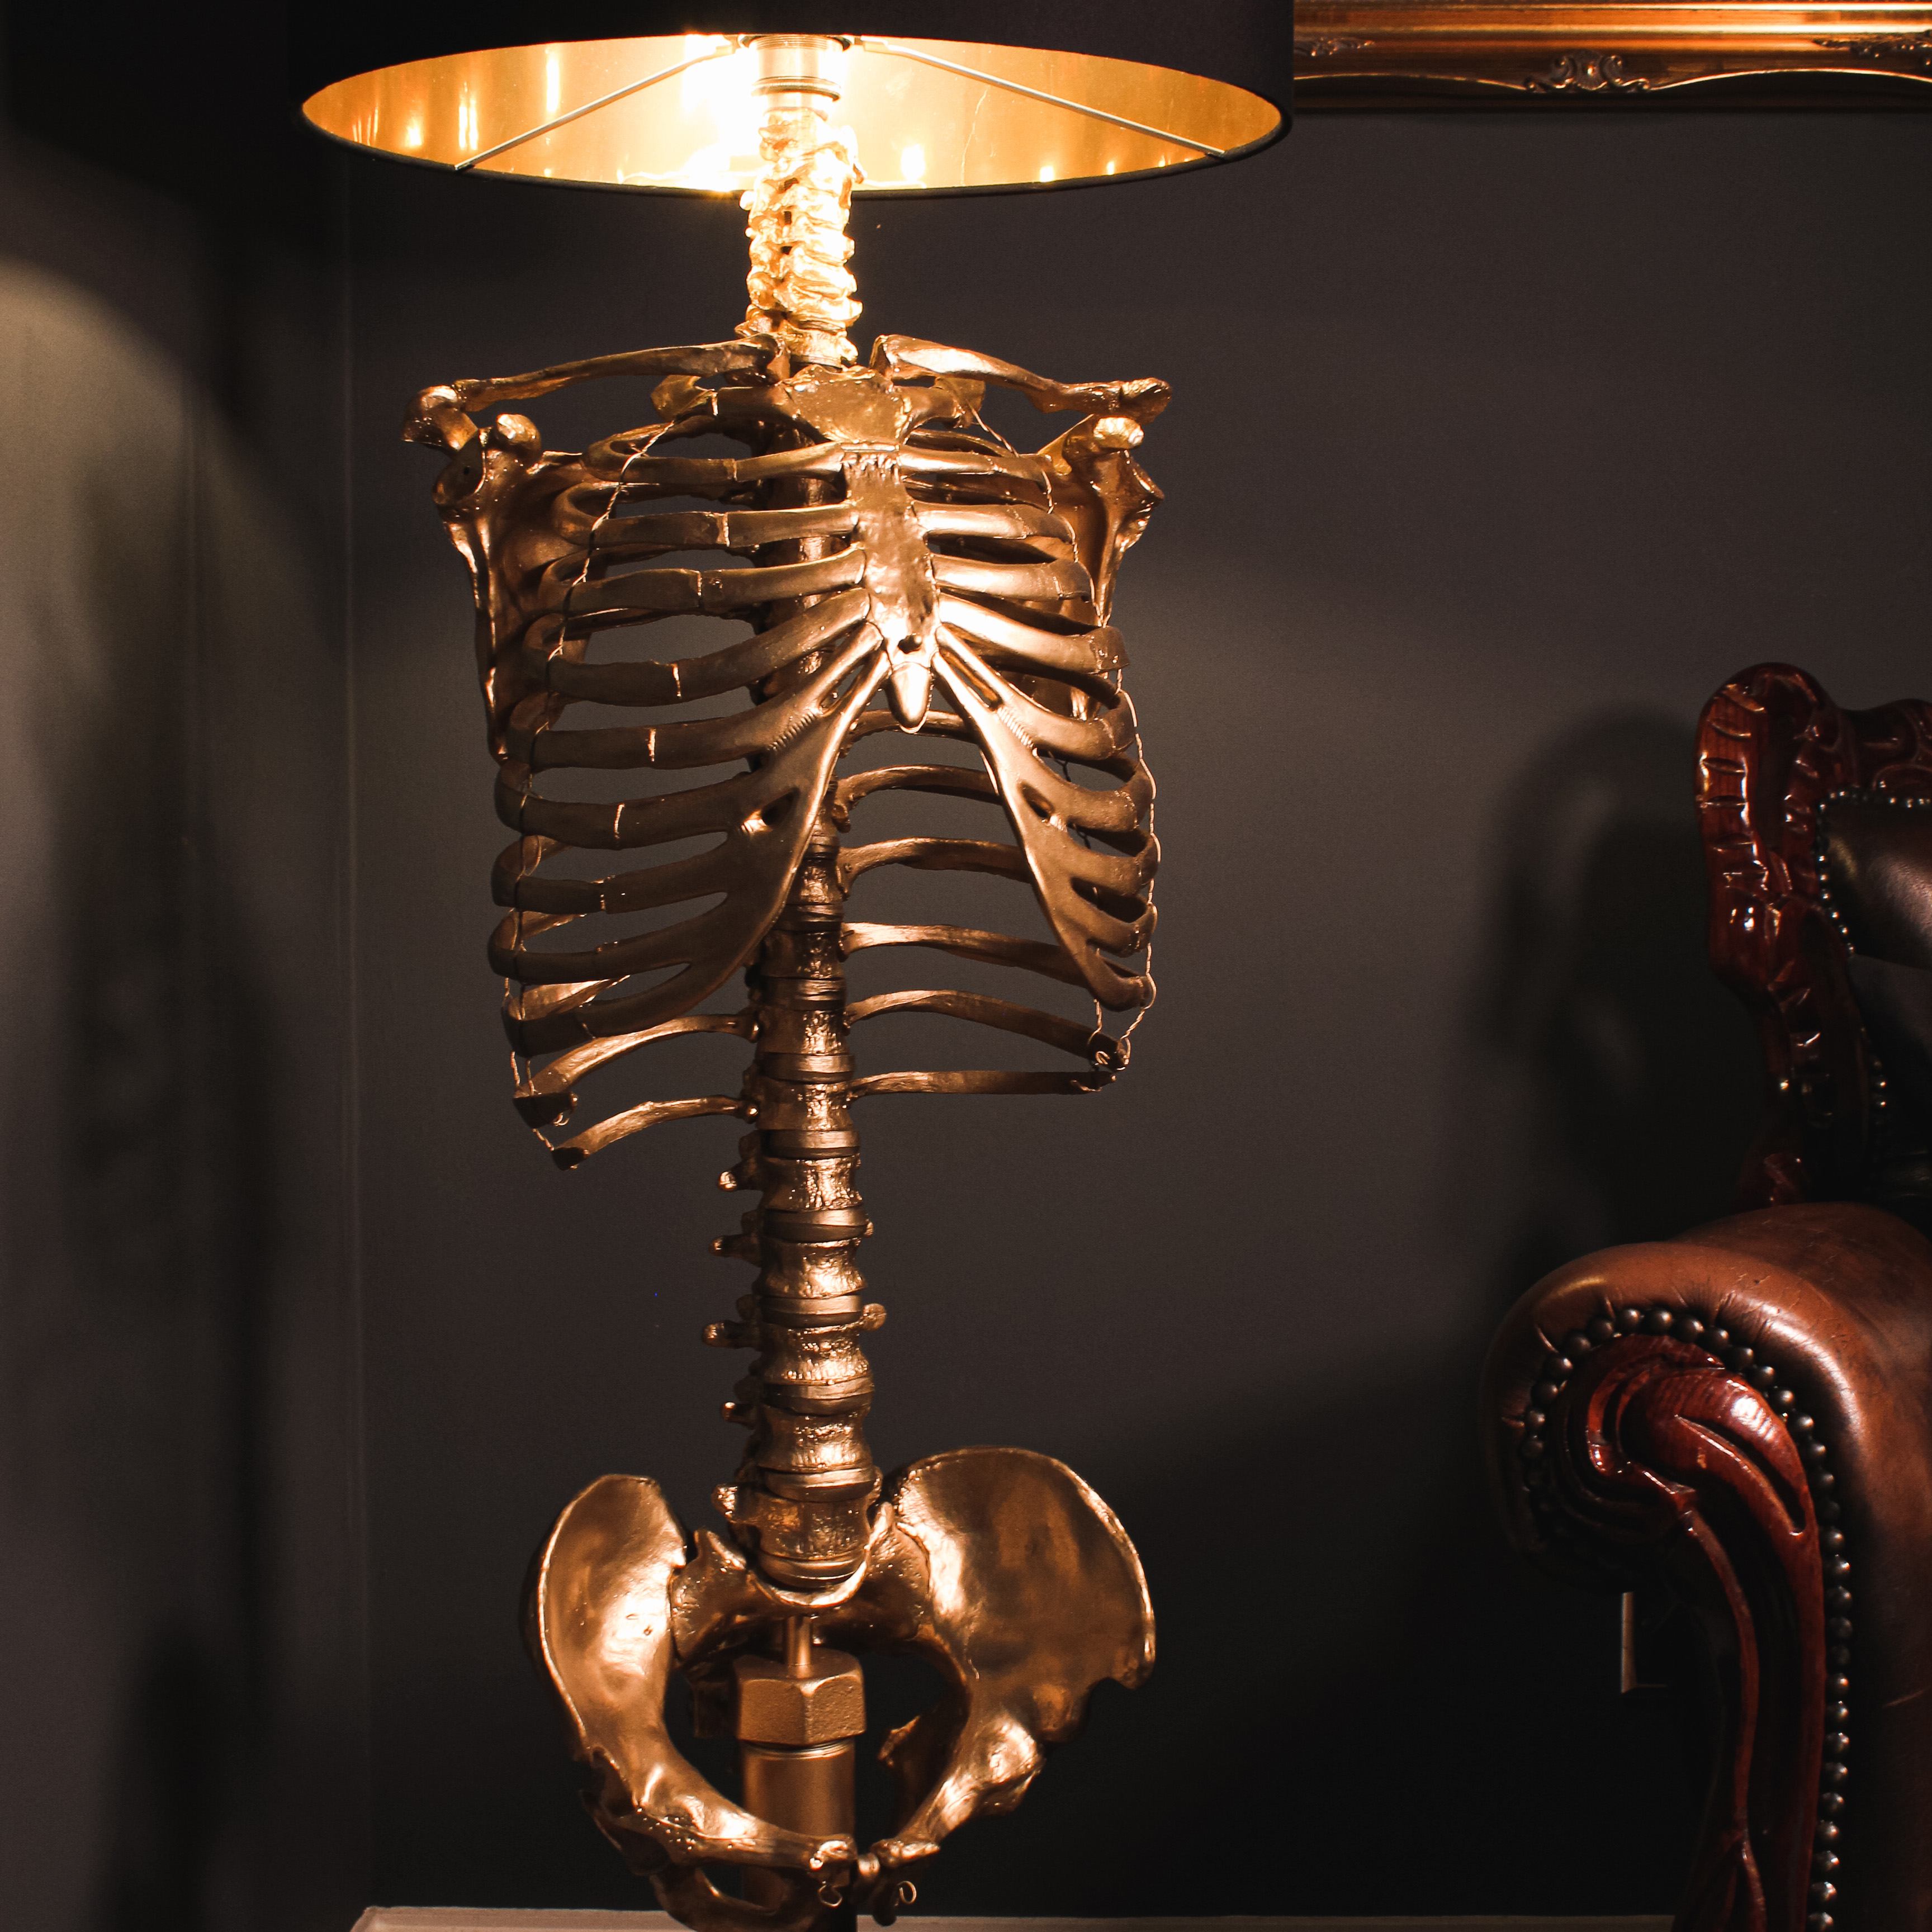 Die Edison Skull Lampe Totenkopf Dekor von The Blackened Teeth Gothic Home  Decor handgefertigt von Handwerkern - .de